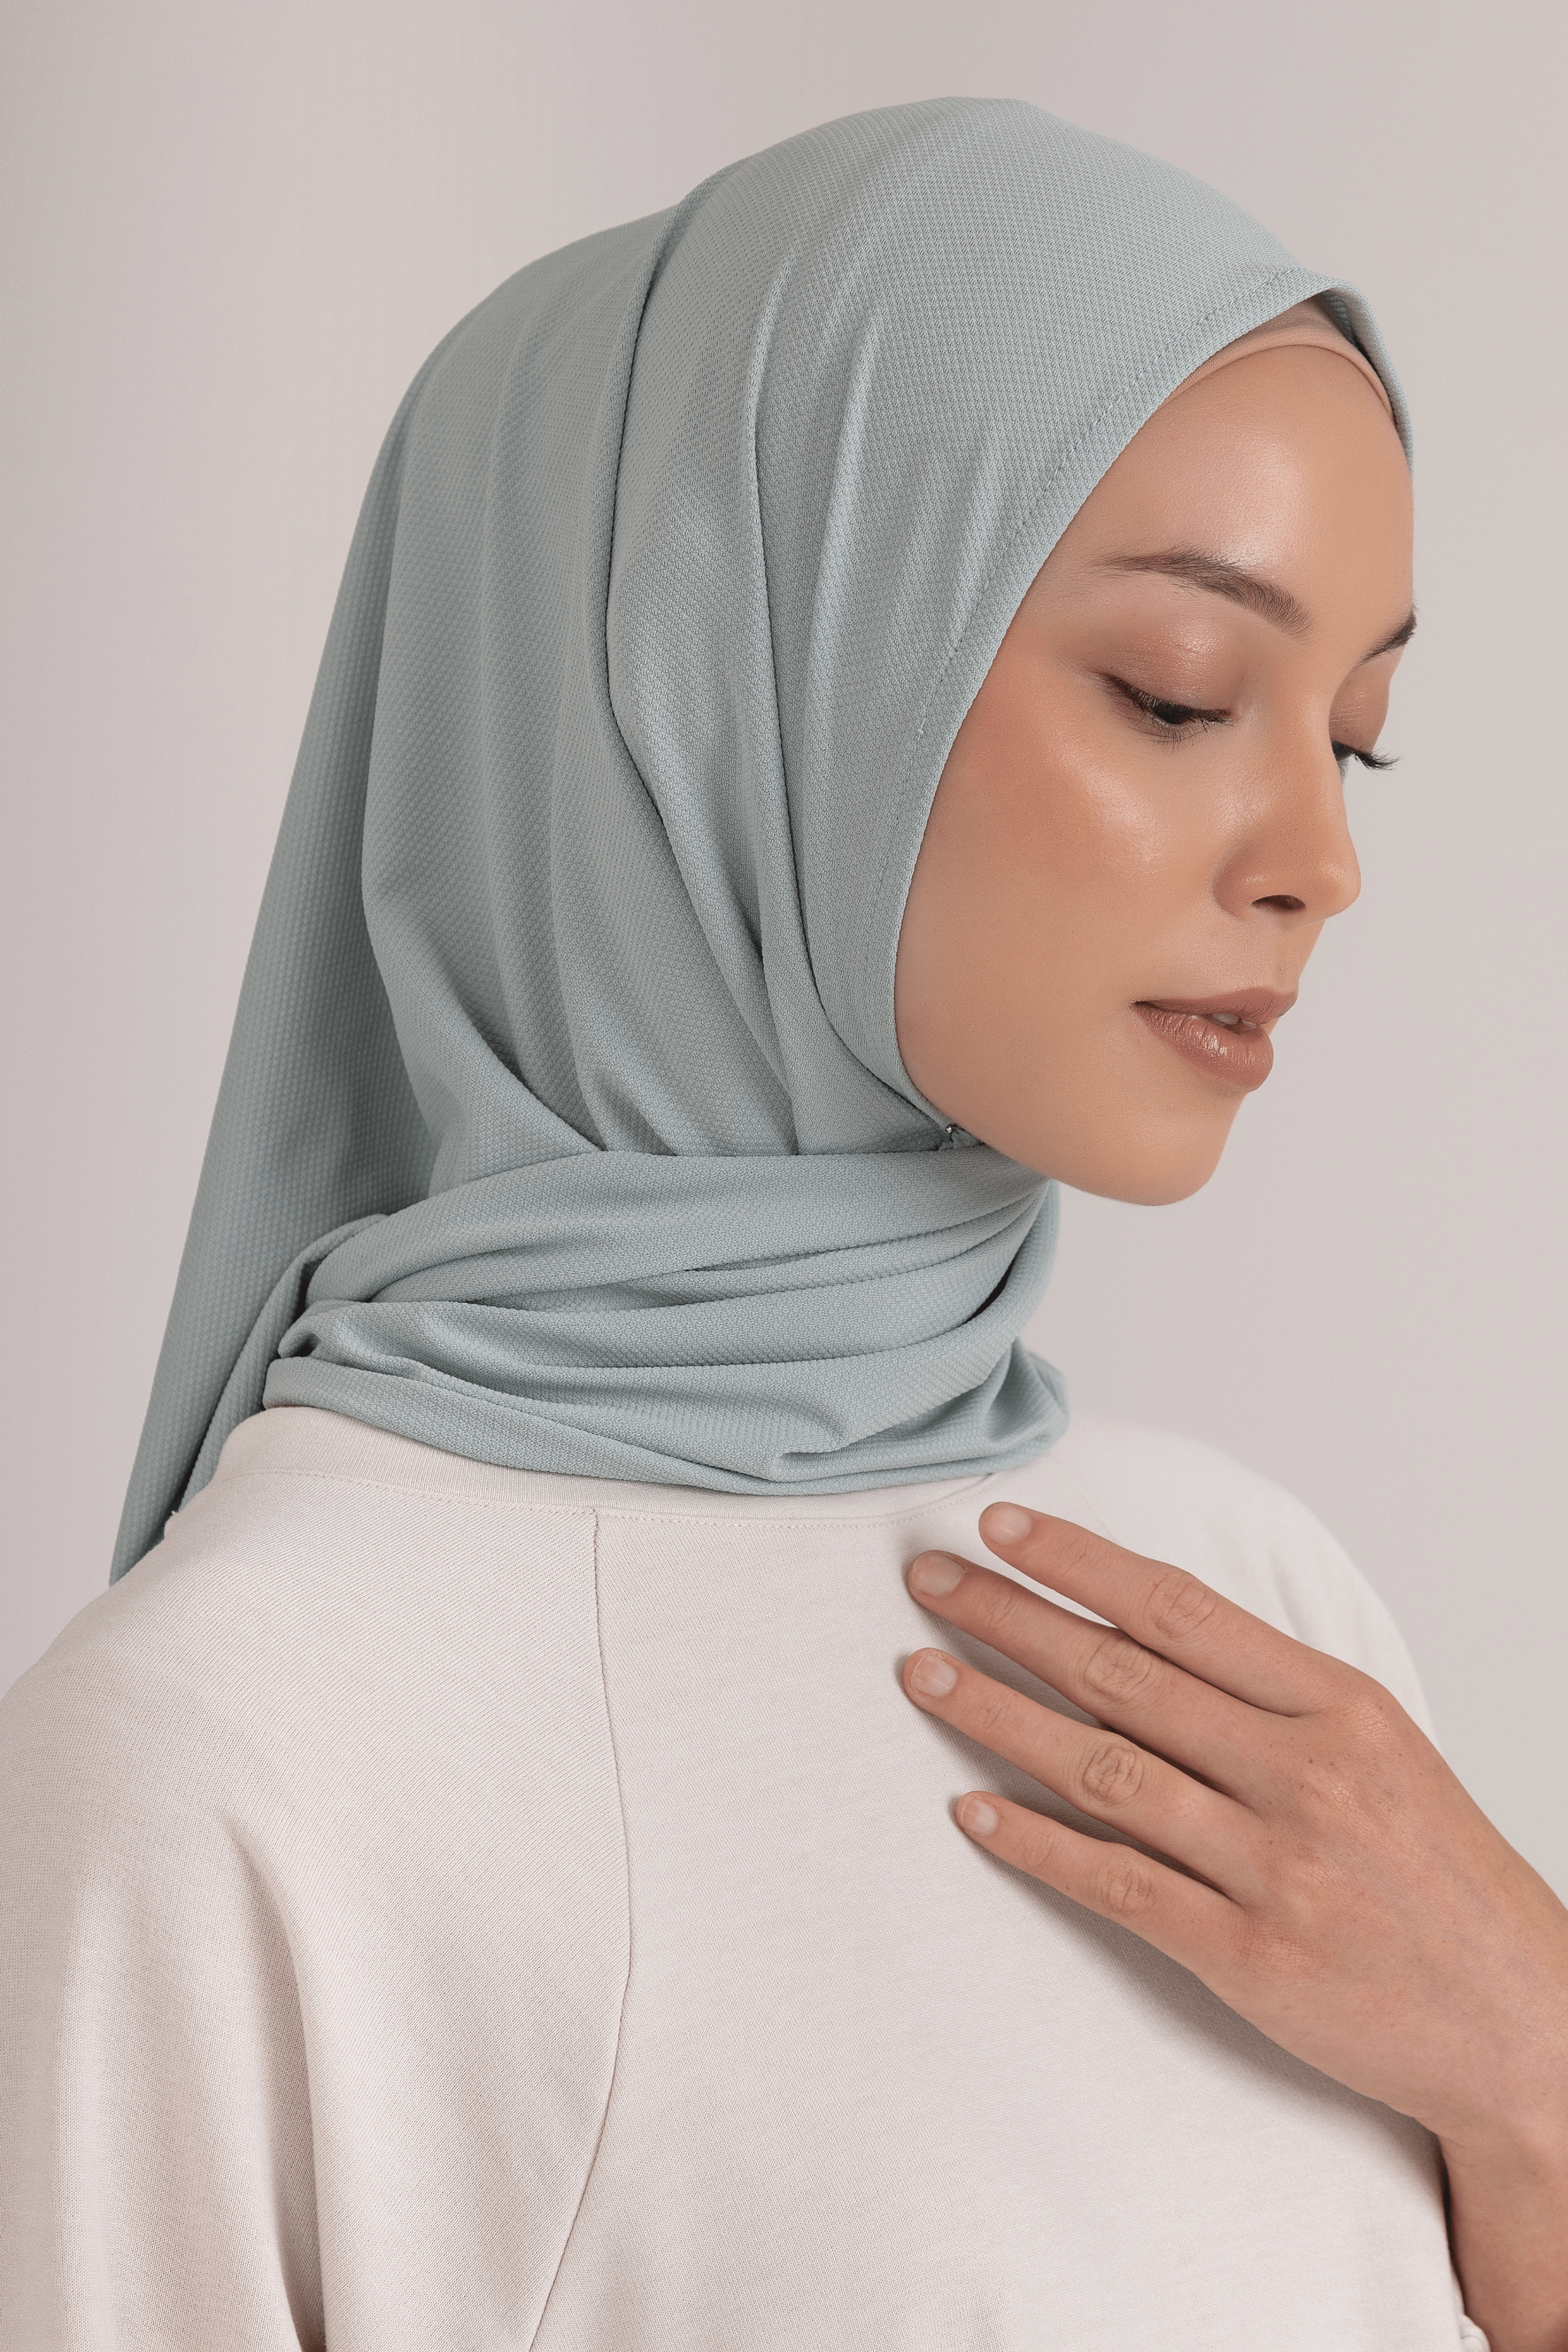 LAICA x RiaMiranda Instant Hijab - Jadeite